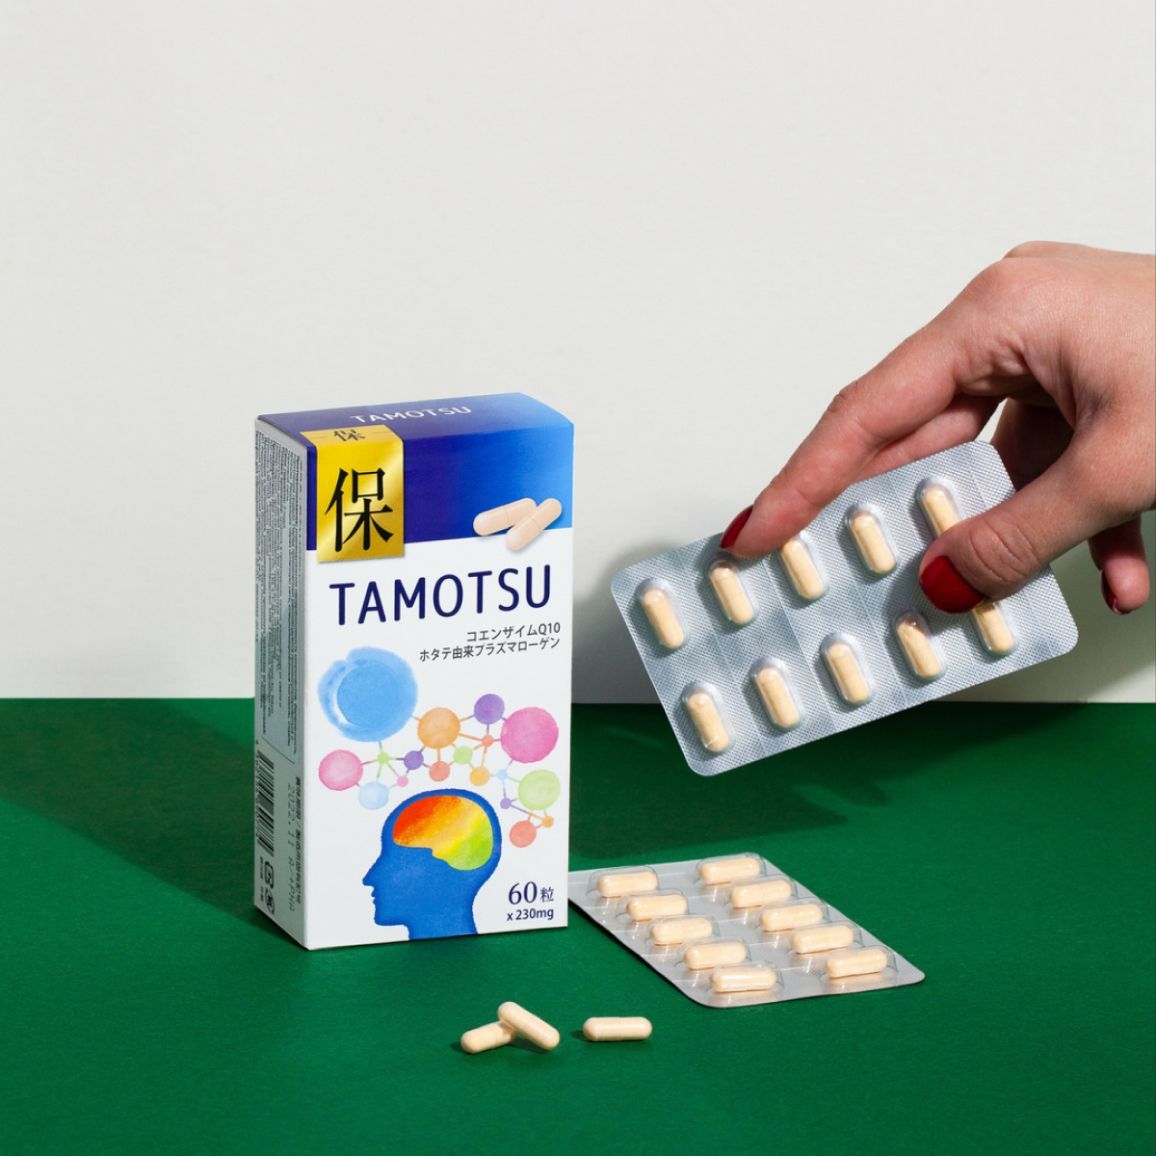 Tamotsu